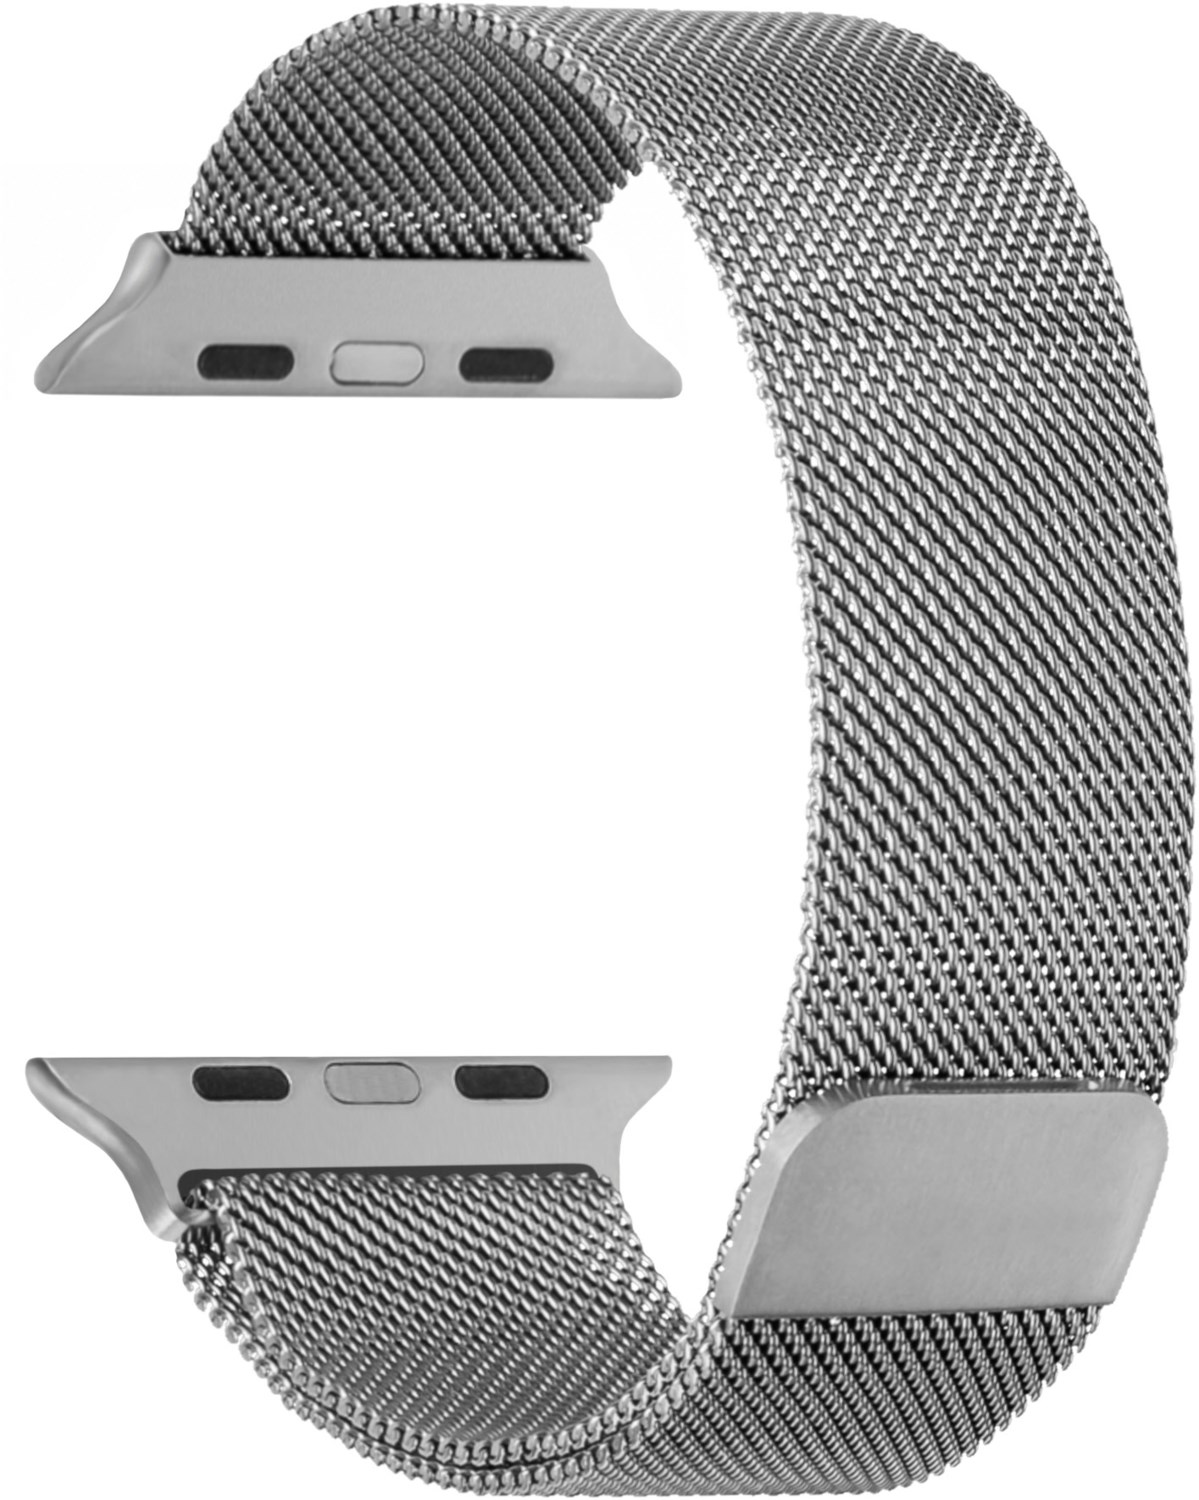 Armband Mesh (42/44mm) für Apple Watch Series 3 silber